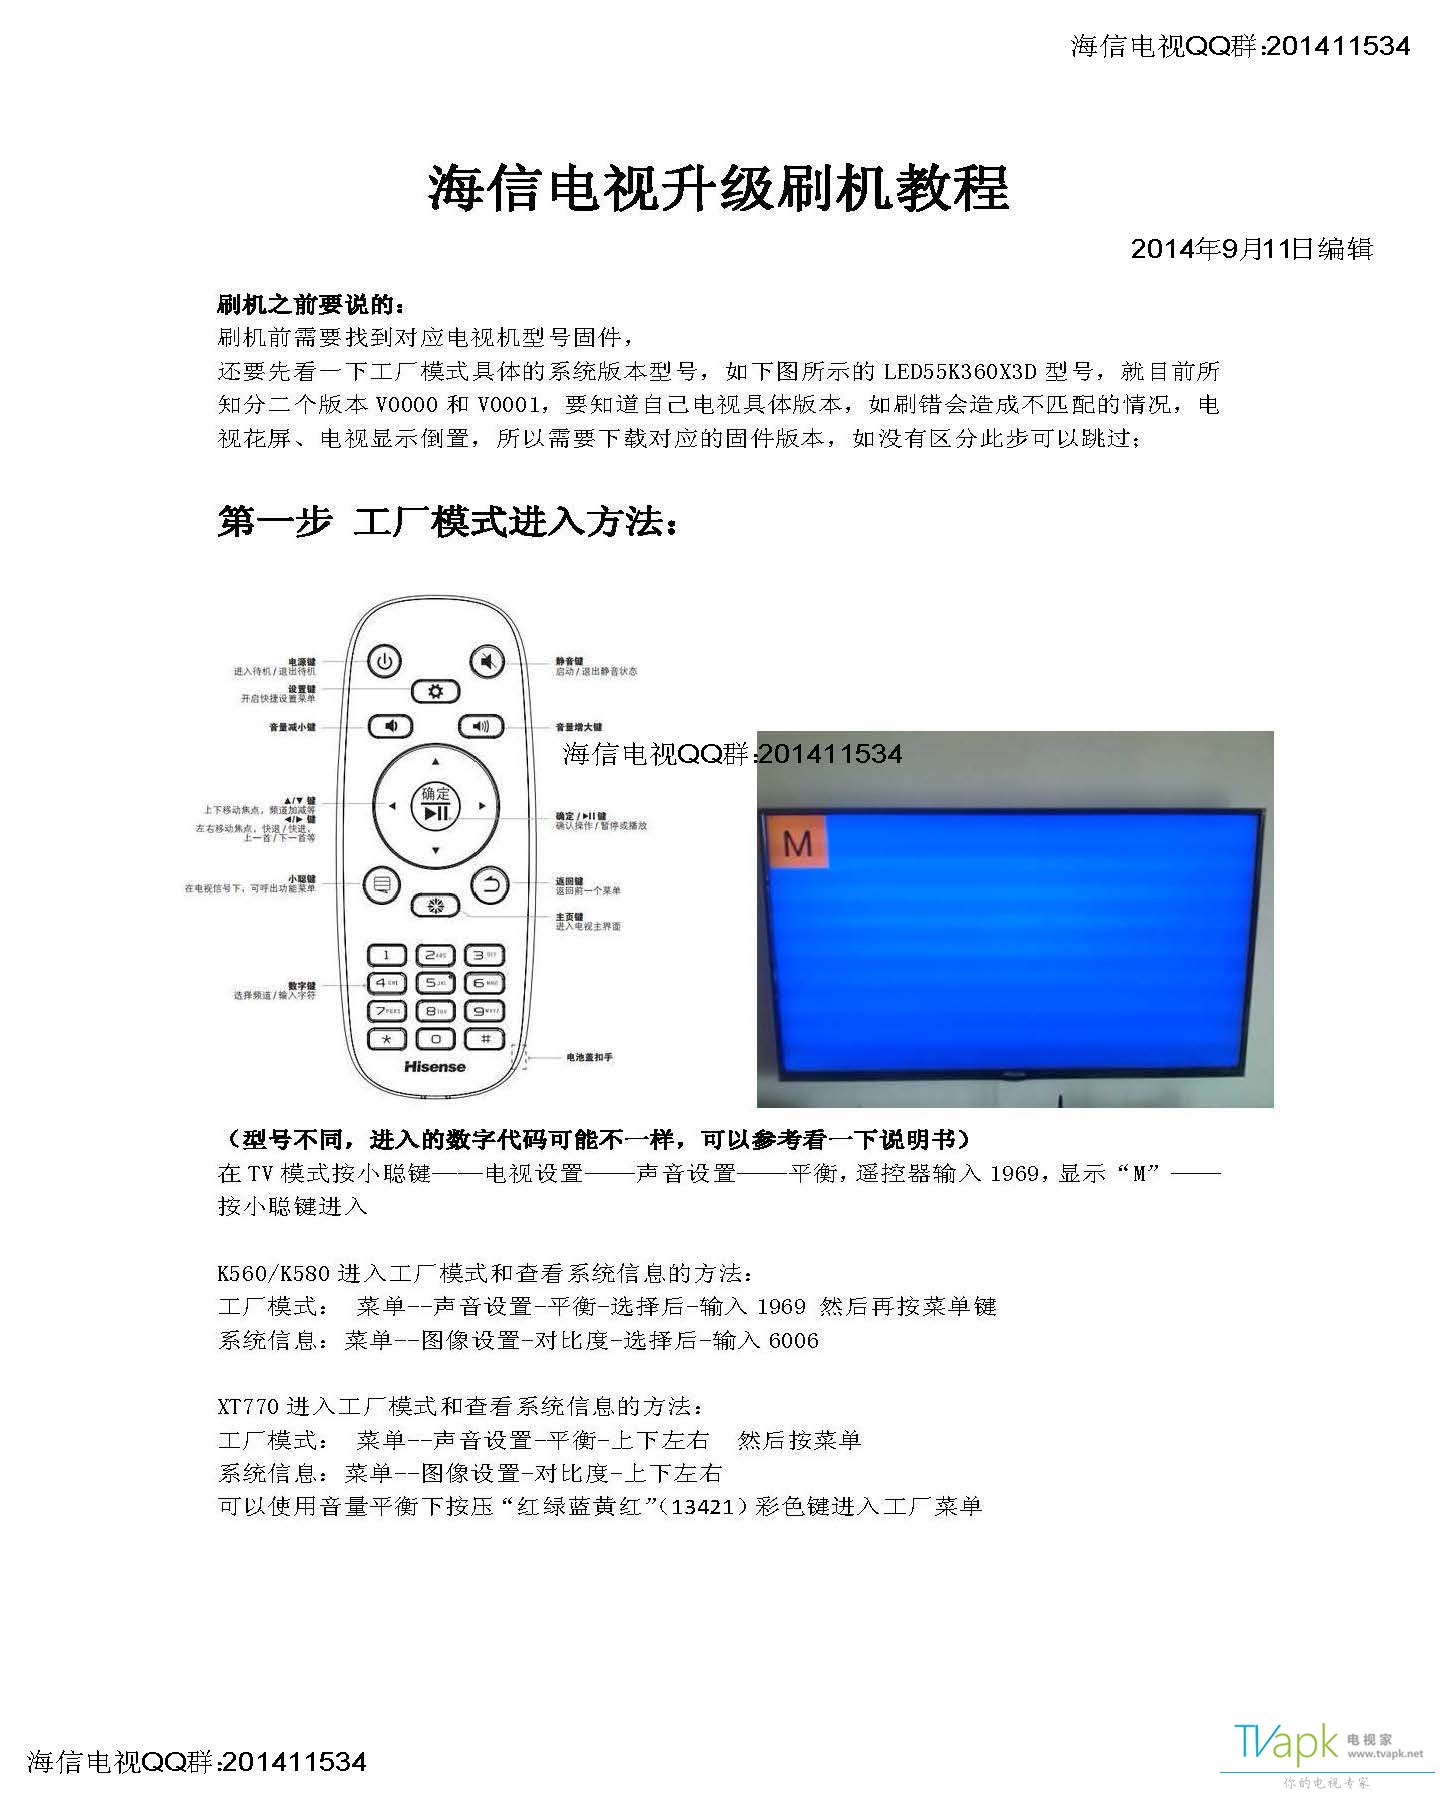 海信电视升级刷机基础教程_页面_1.jpg